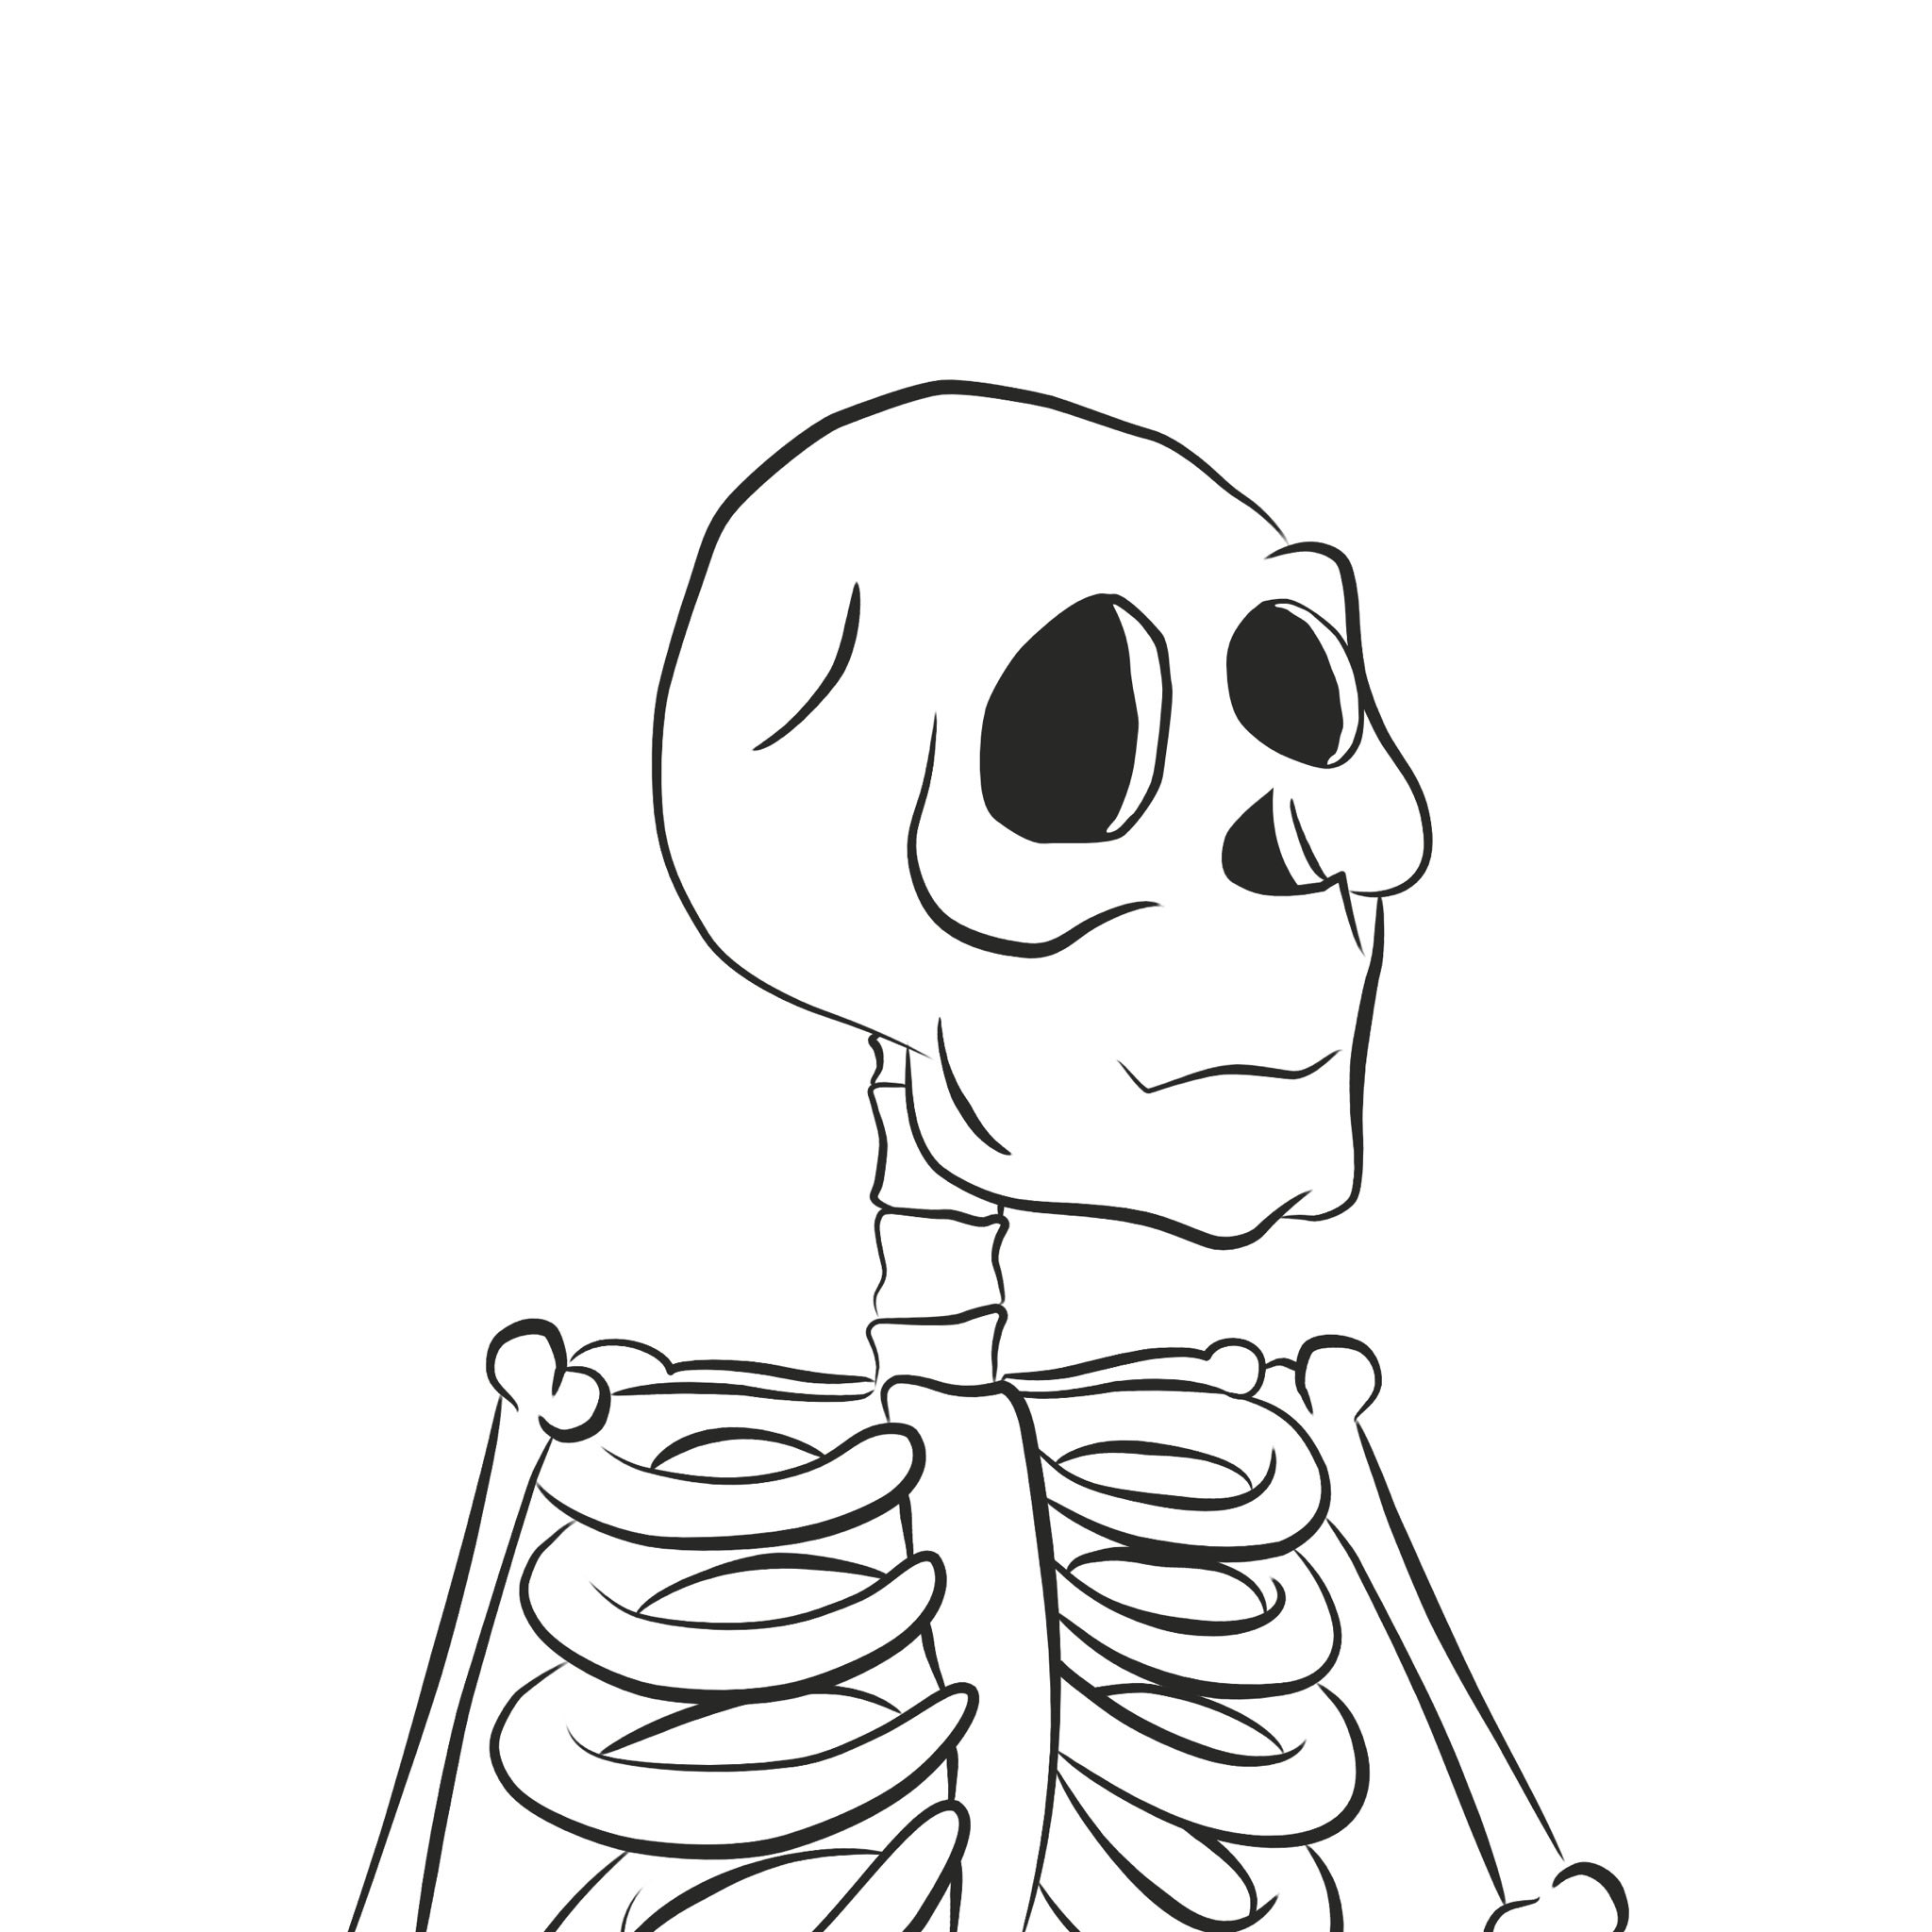 Skelbones